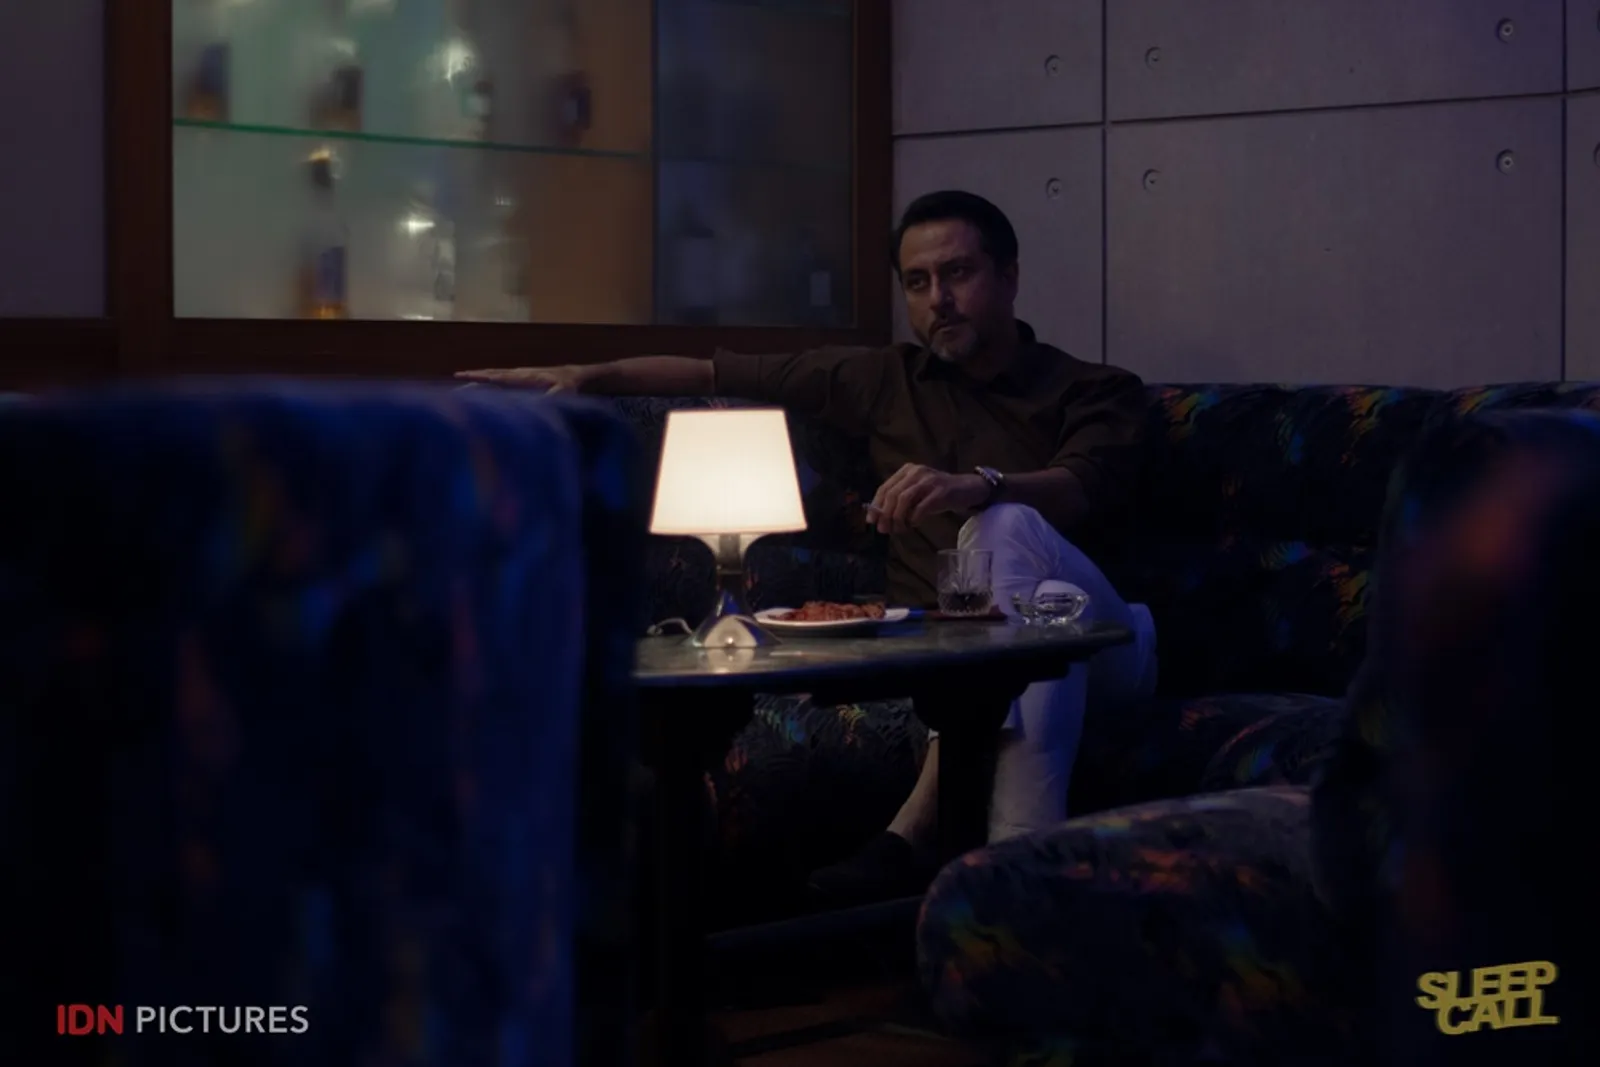 7+ Isu Sosial yang Diangkat dalam Film 'Sleep Call'